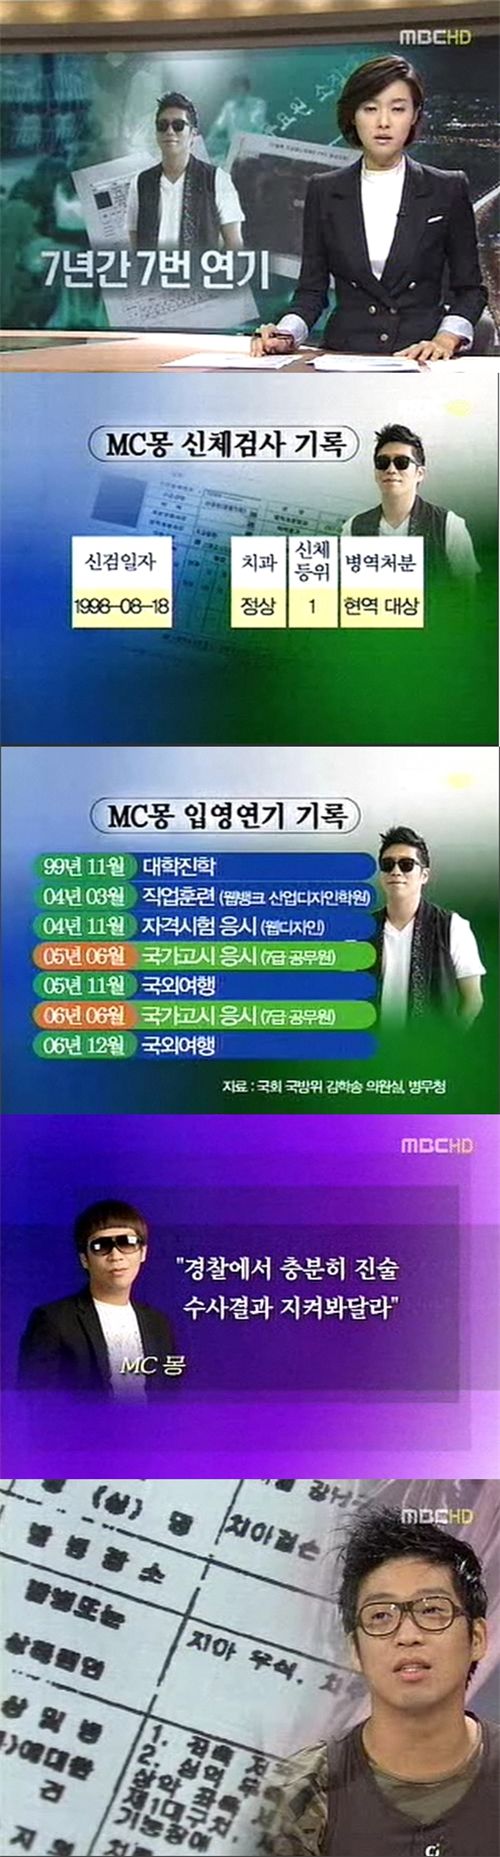 '병역비리혐의' MC몽, 7년간 7번 입대연기…이유도 각양각색